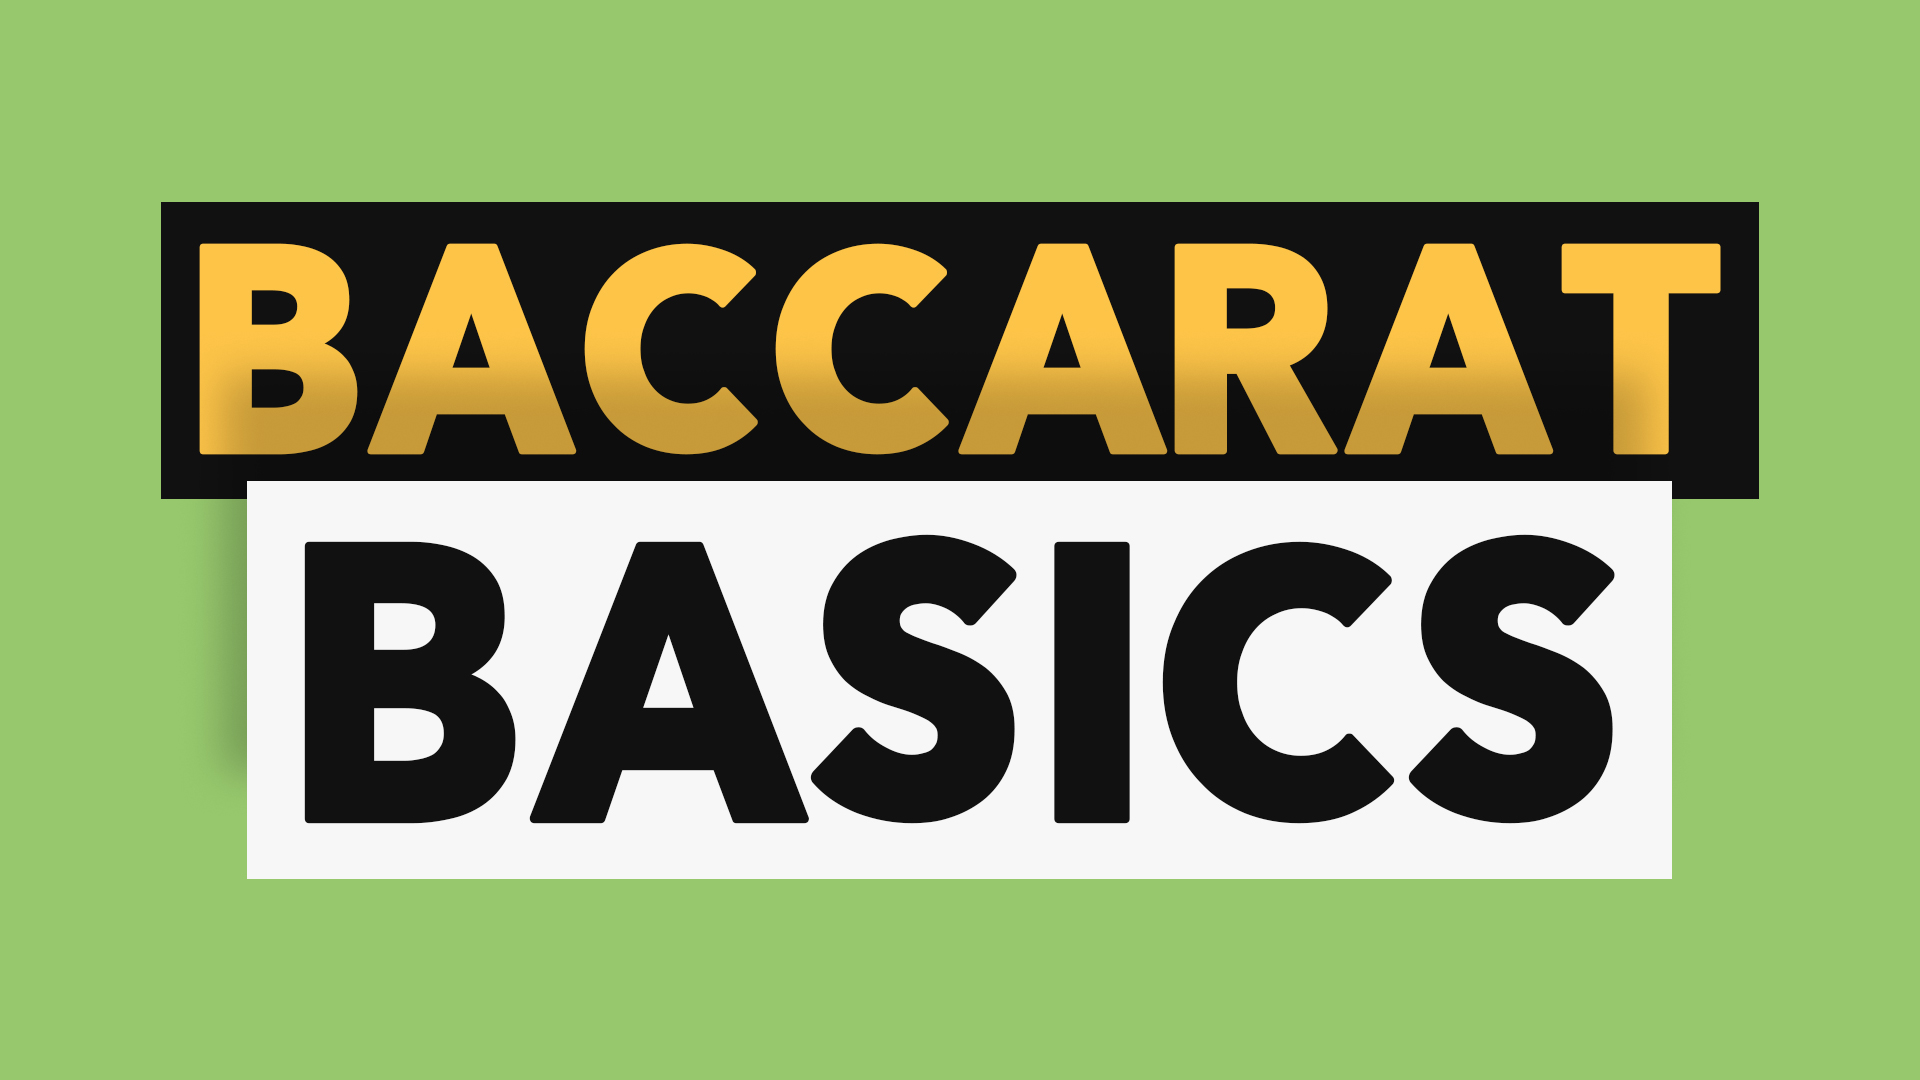 Baccarat百家乐 Basics基本